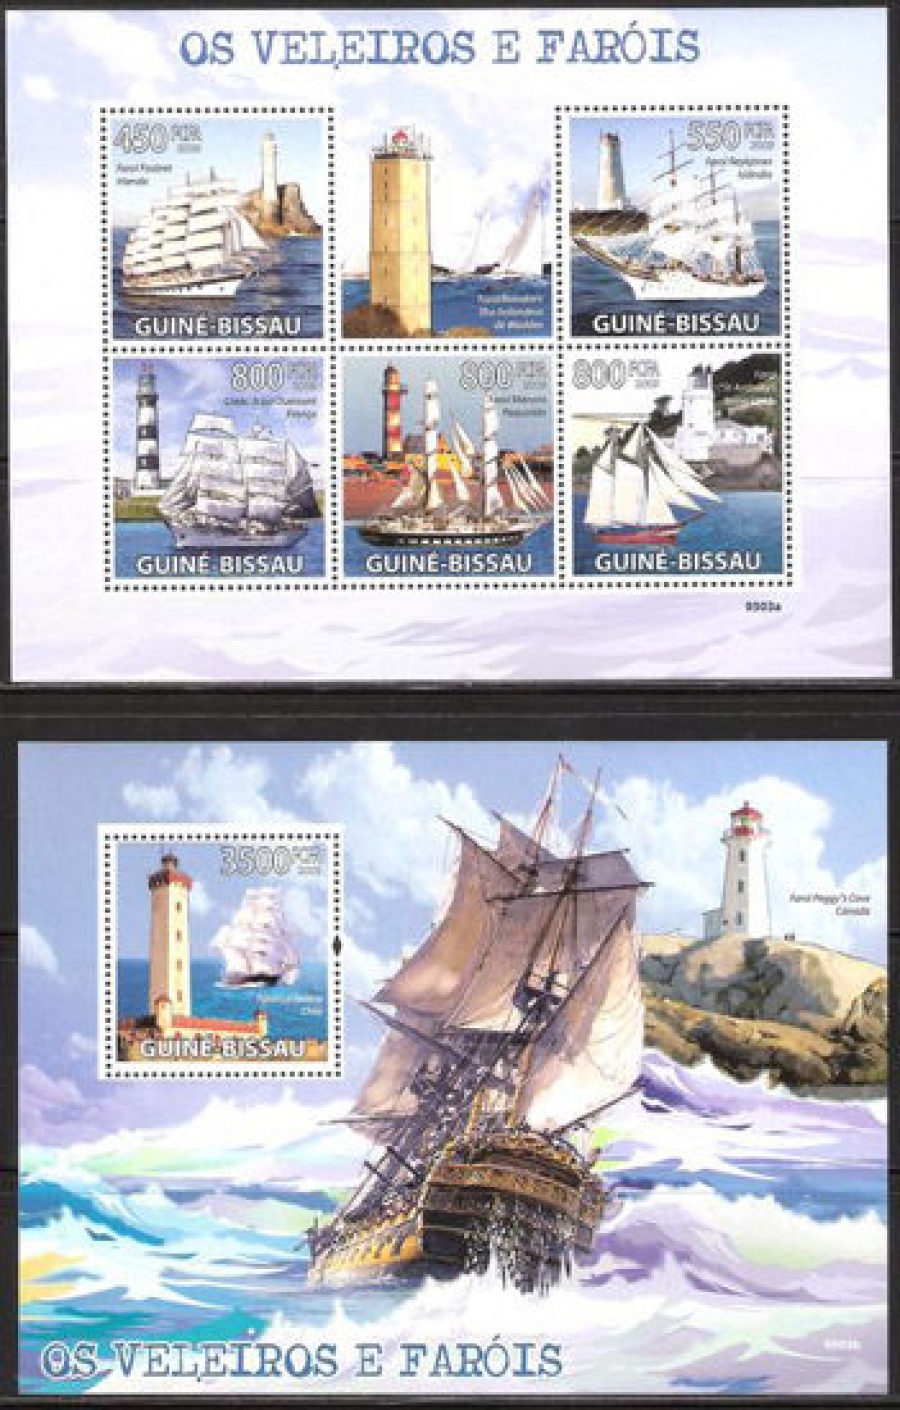 Почтовая марка НК. Гвинея-Бисау. Михель № 4384-4388 и ПБ № 867 перфорация